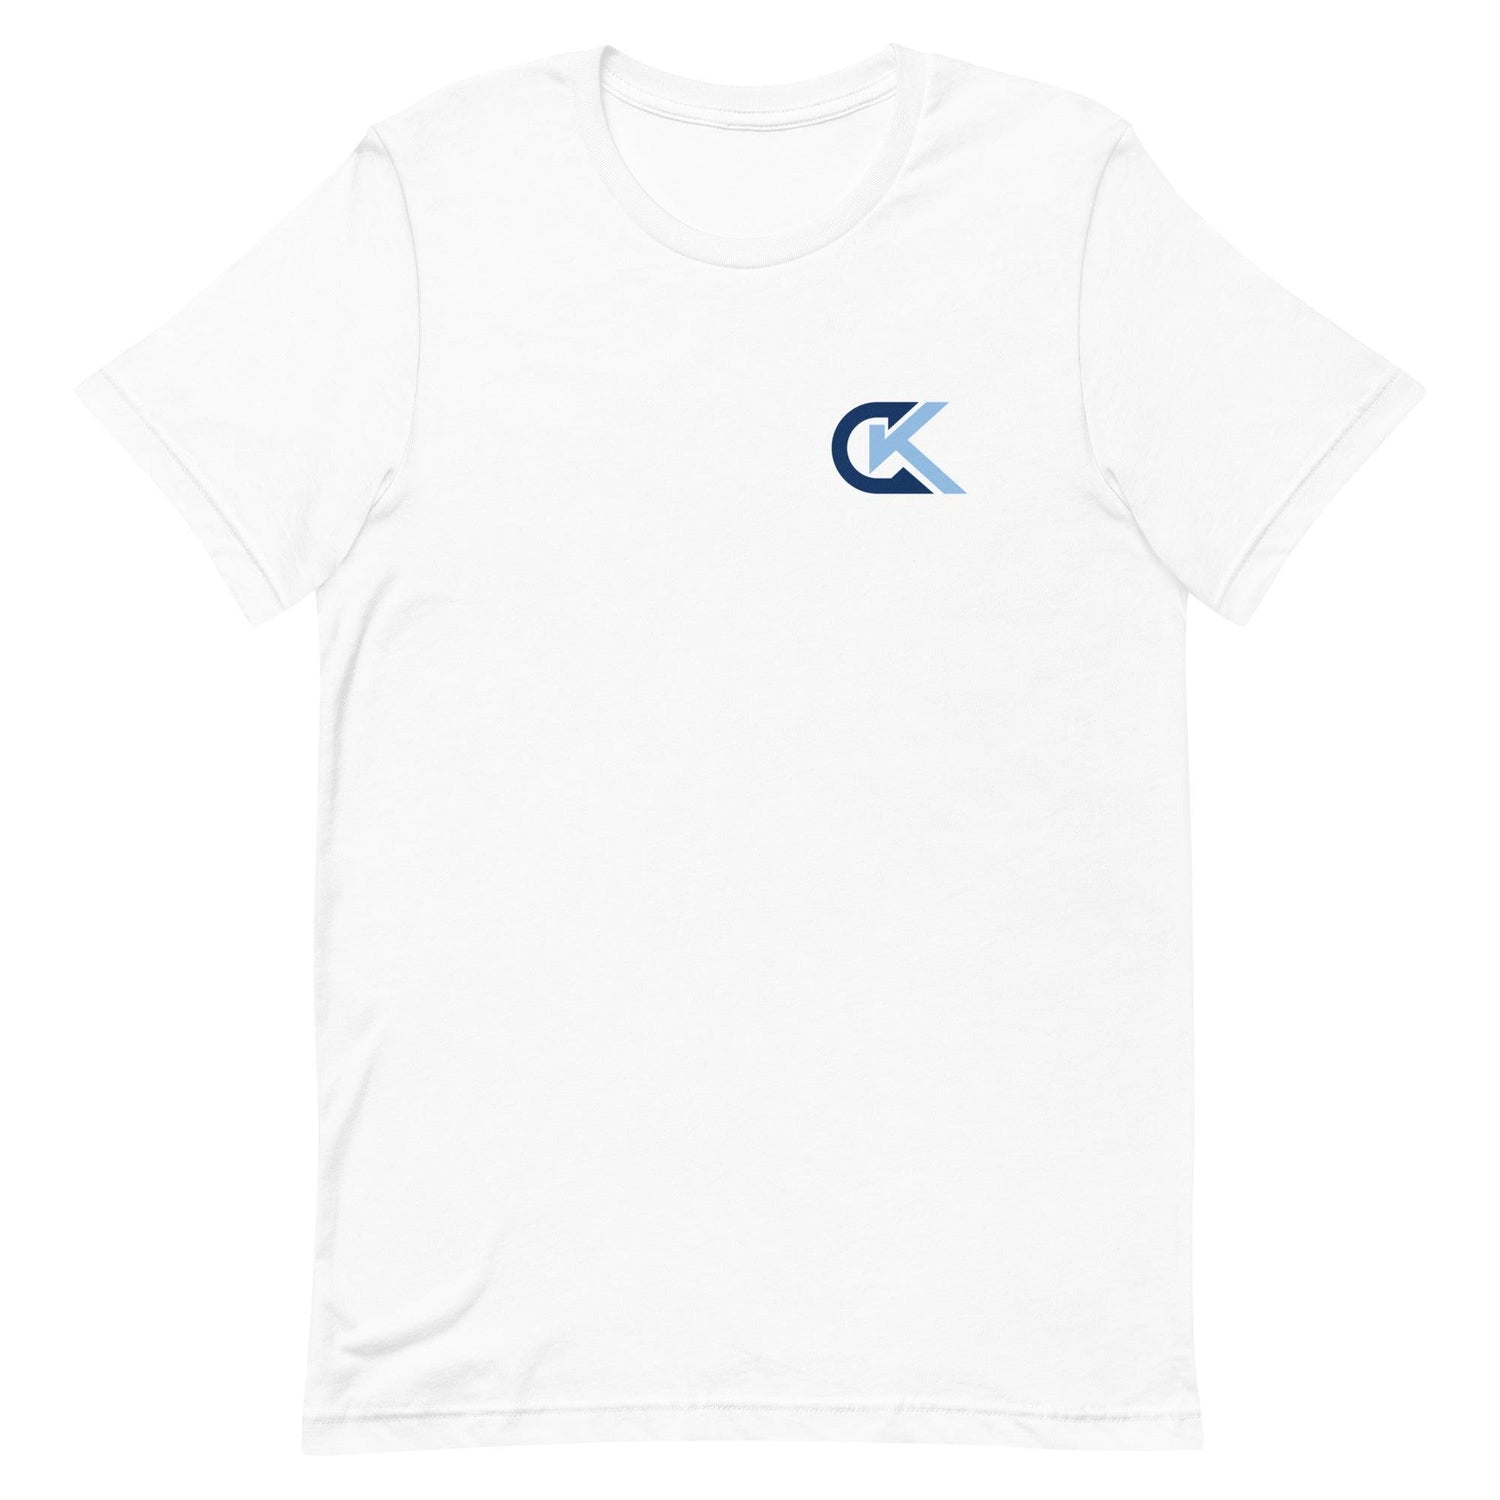 Corey Kluber "Elite" t-shirt - Fan Arch